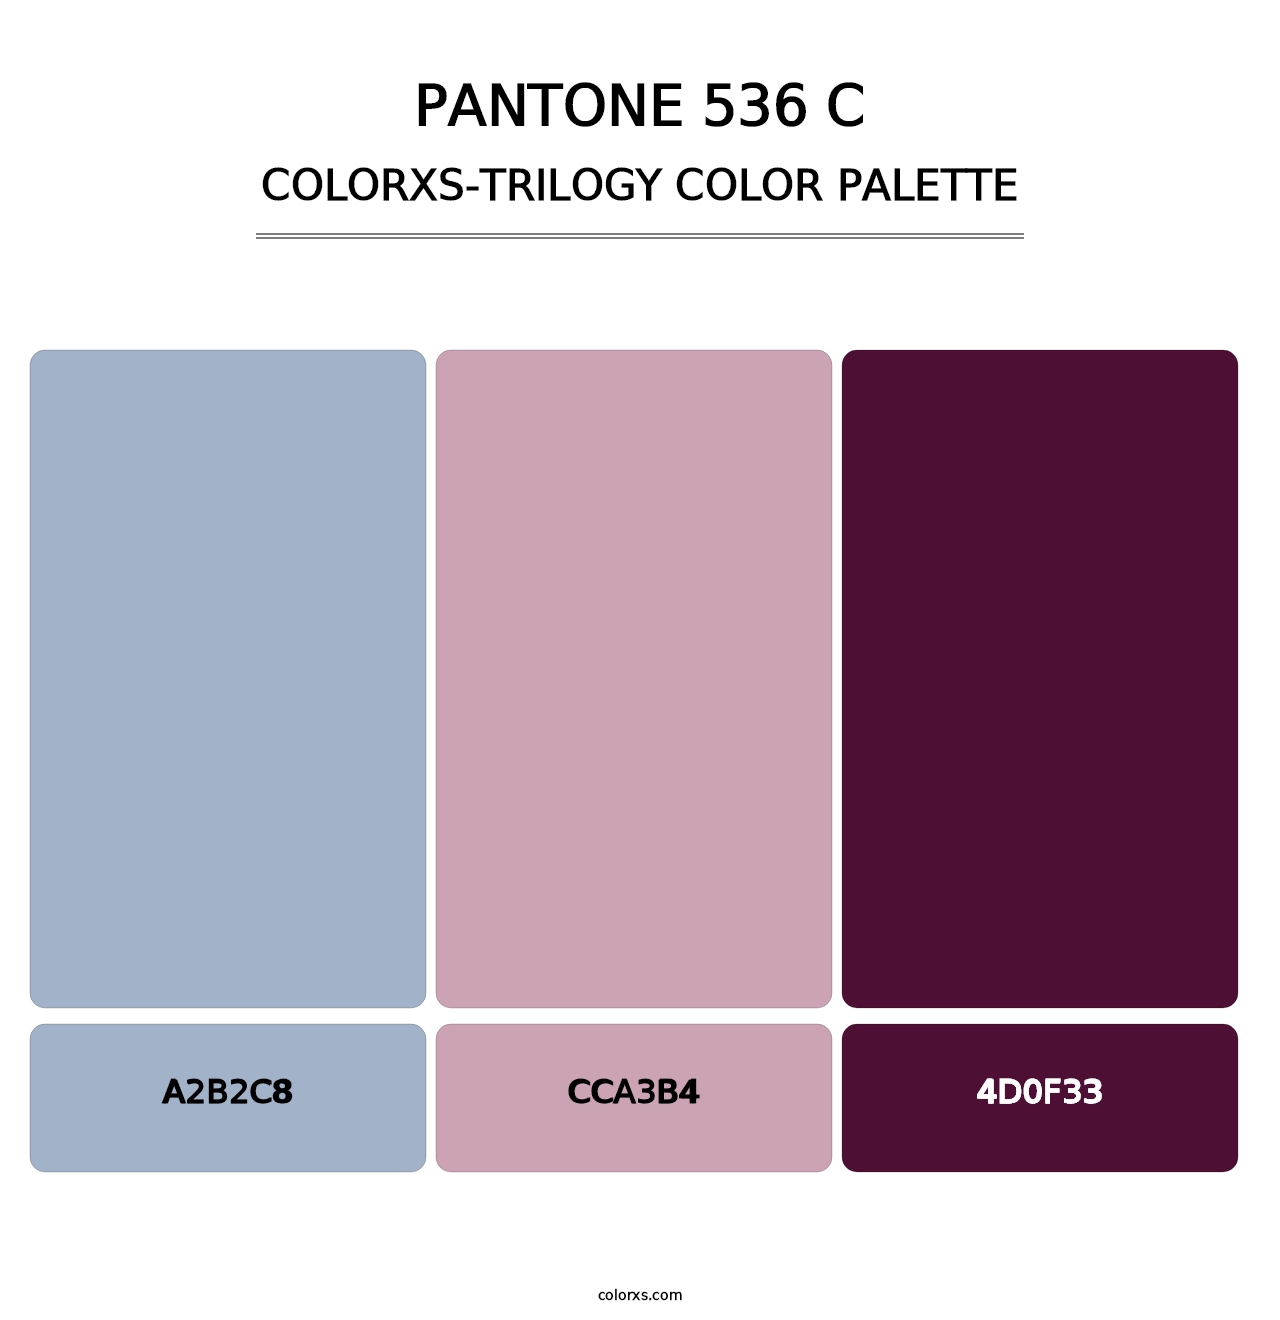 PANTONE 536 C - Colorxs Trilogy Palette